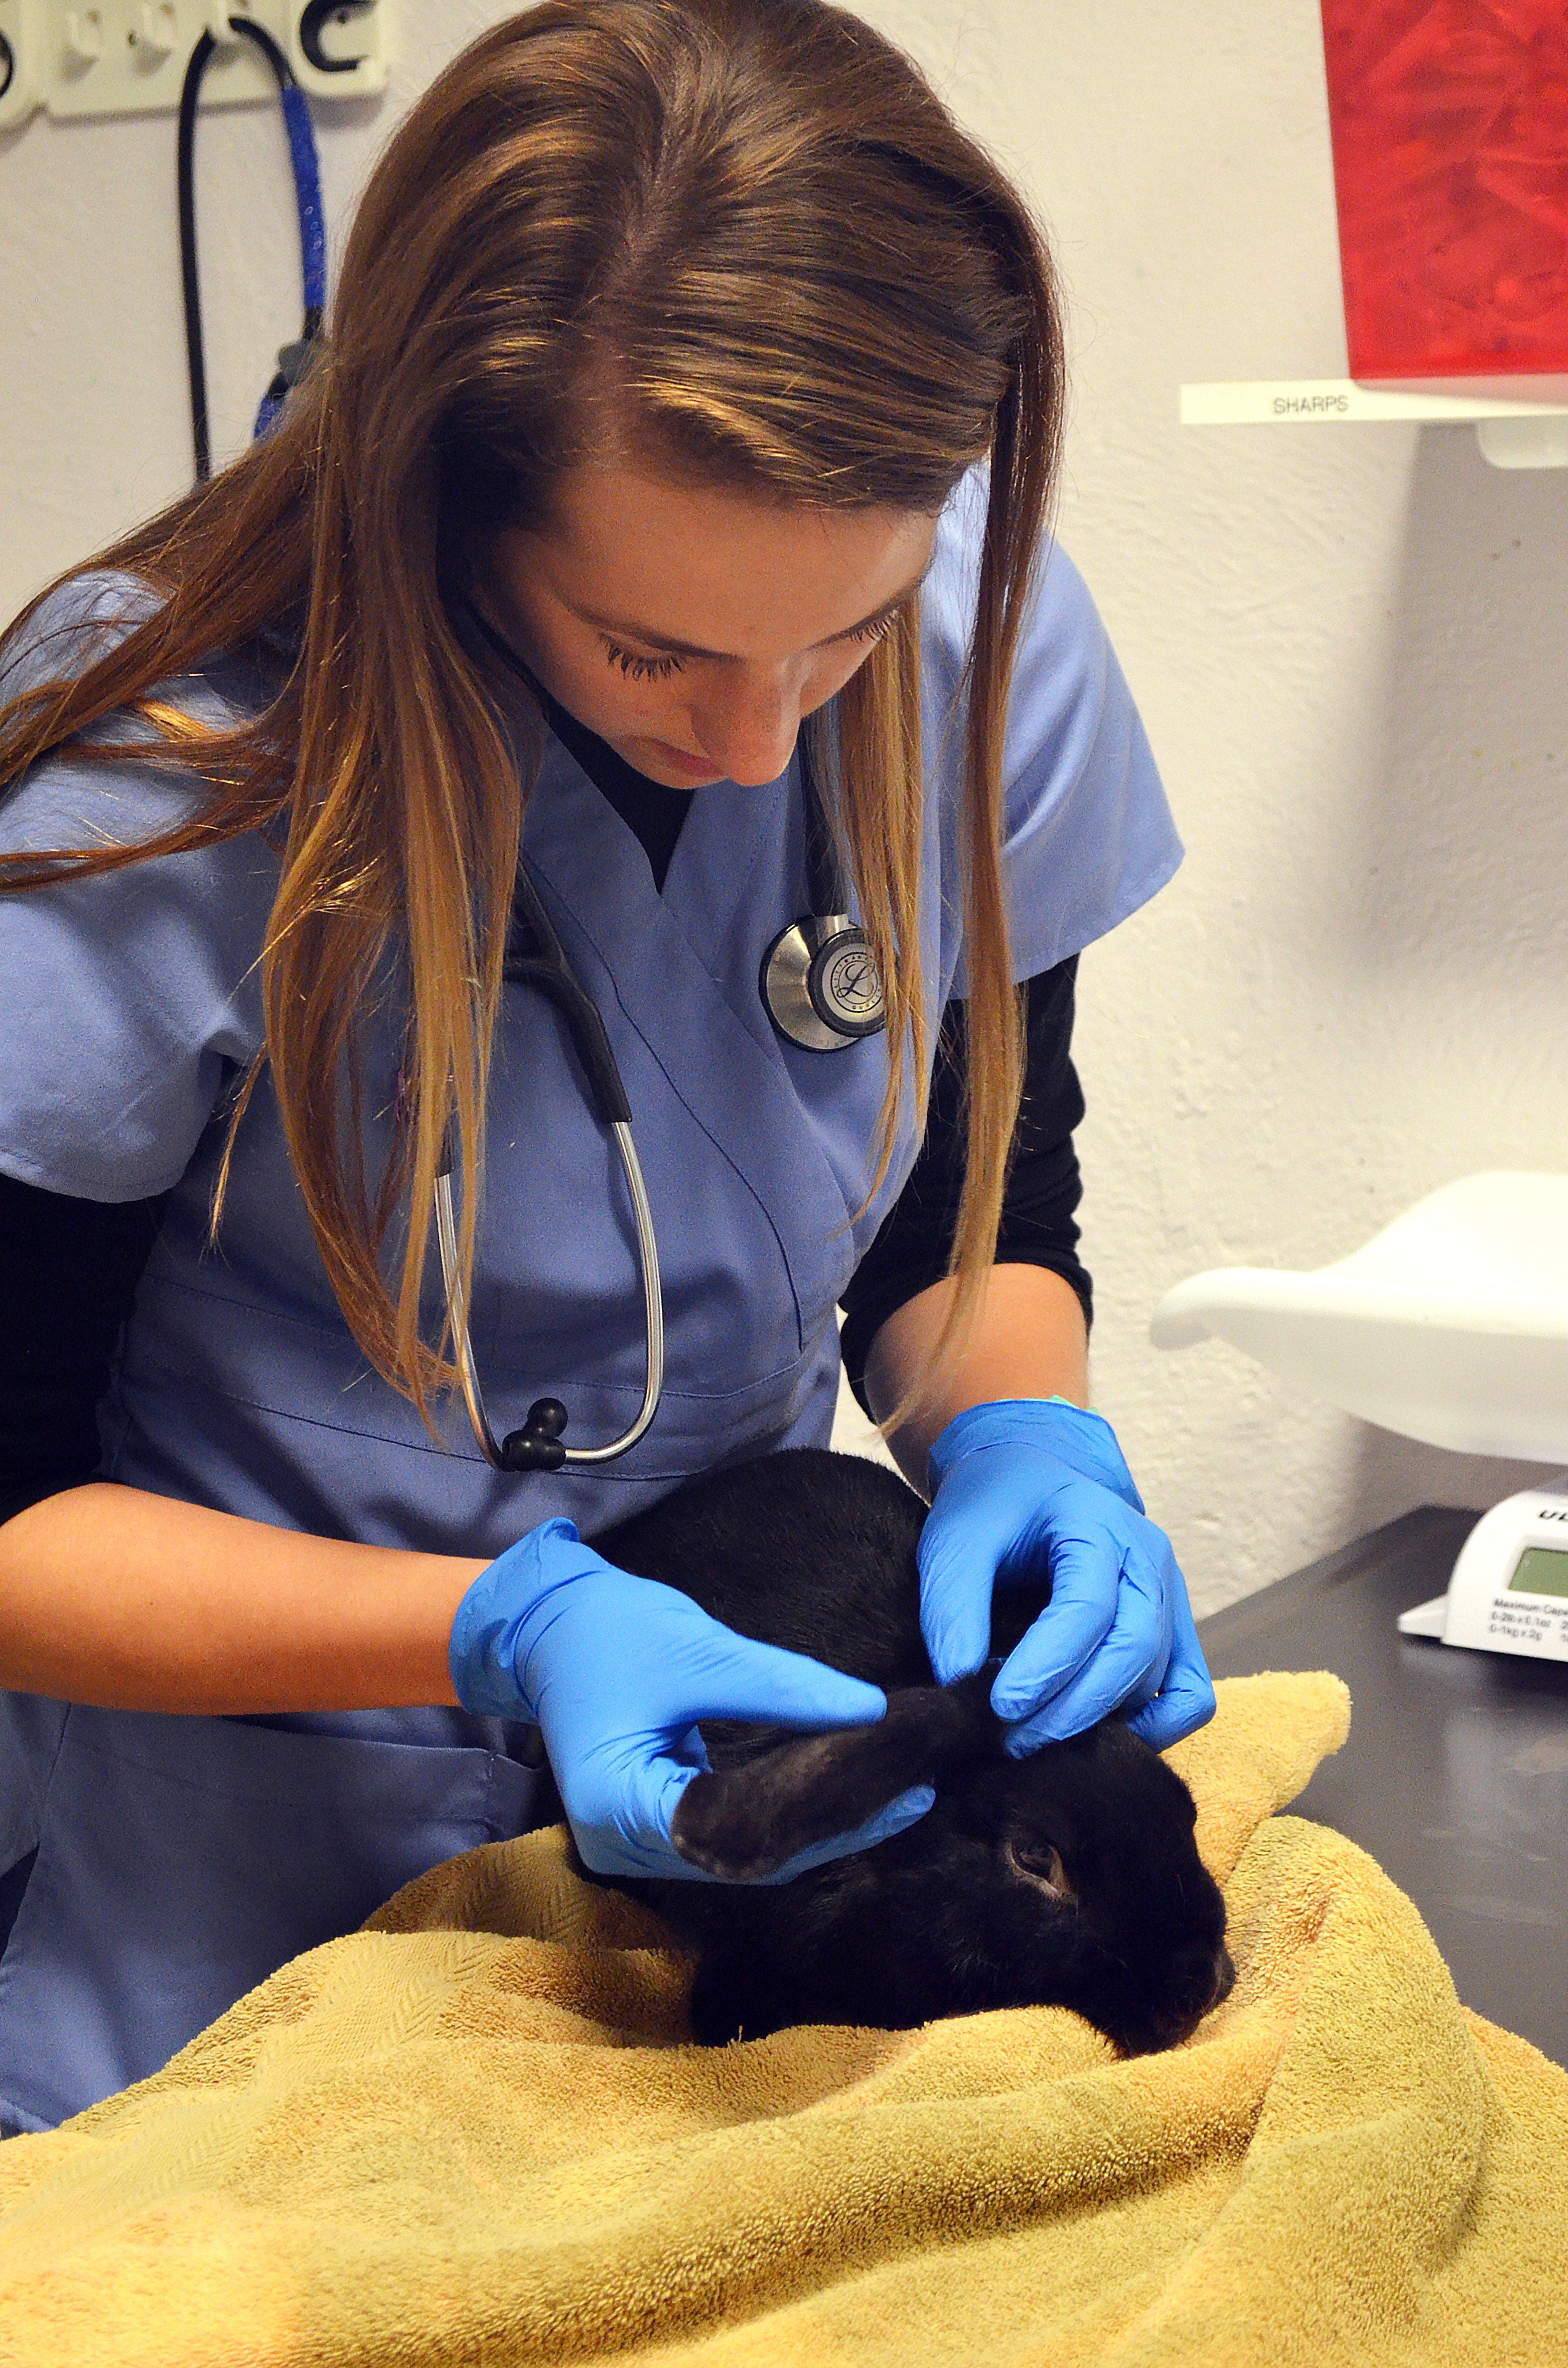 A clinician examines a bunny's ear health